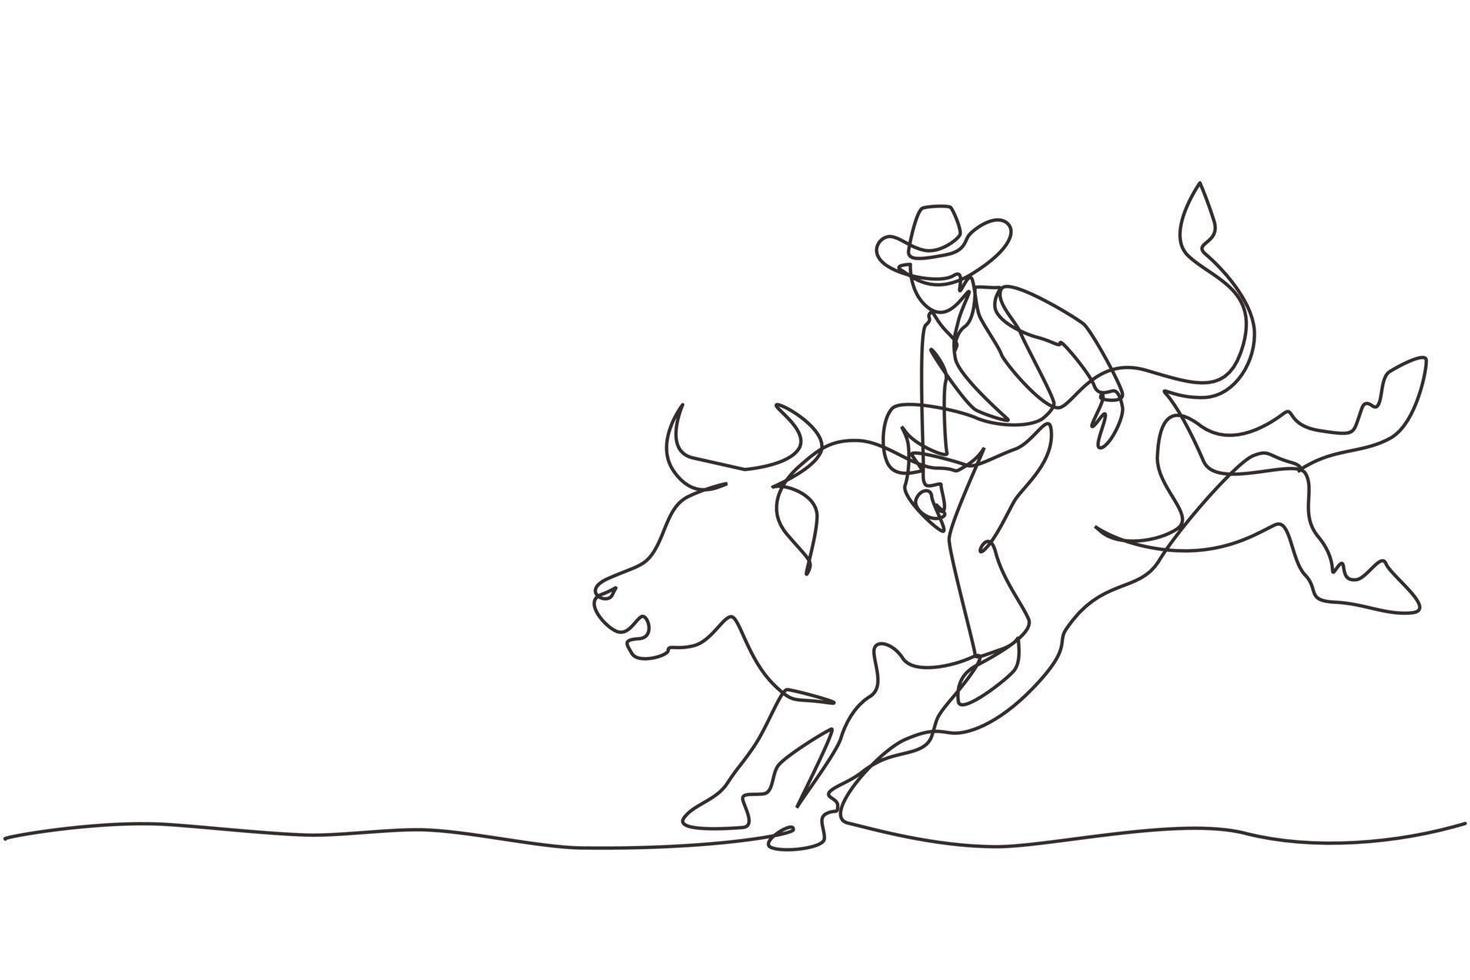 cowboy de desenho de linha contínuo montando touro selvagem para emocionante show de rodeio. cowboy forte e corajoso no chapéu se junta à competição de rodeio montando touro selvagem. ilustração gráfica de vetor de design de linha única